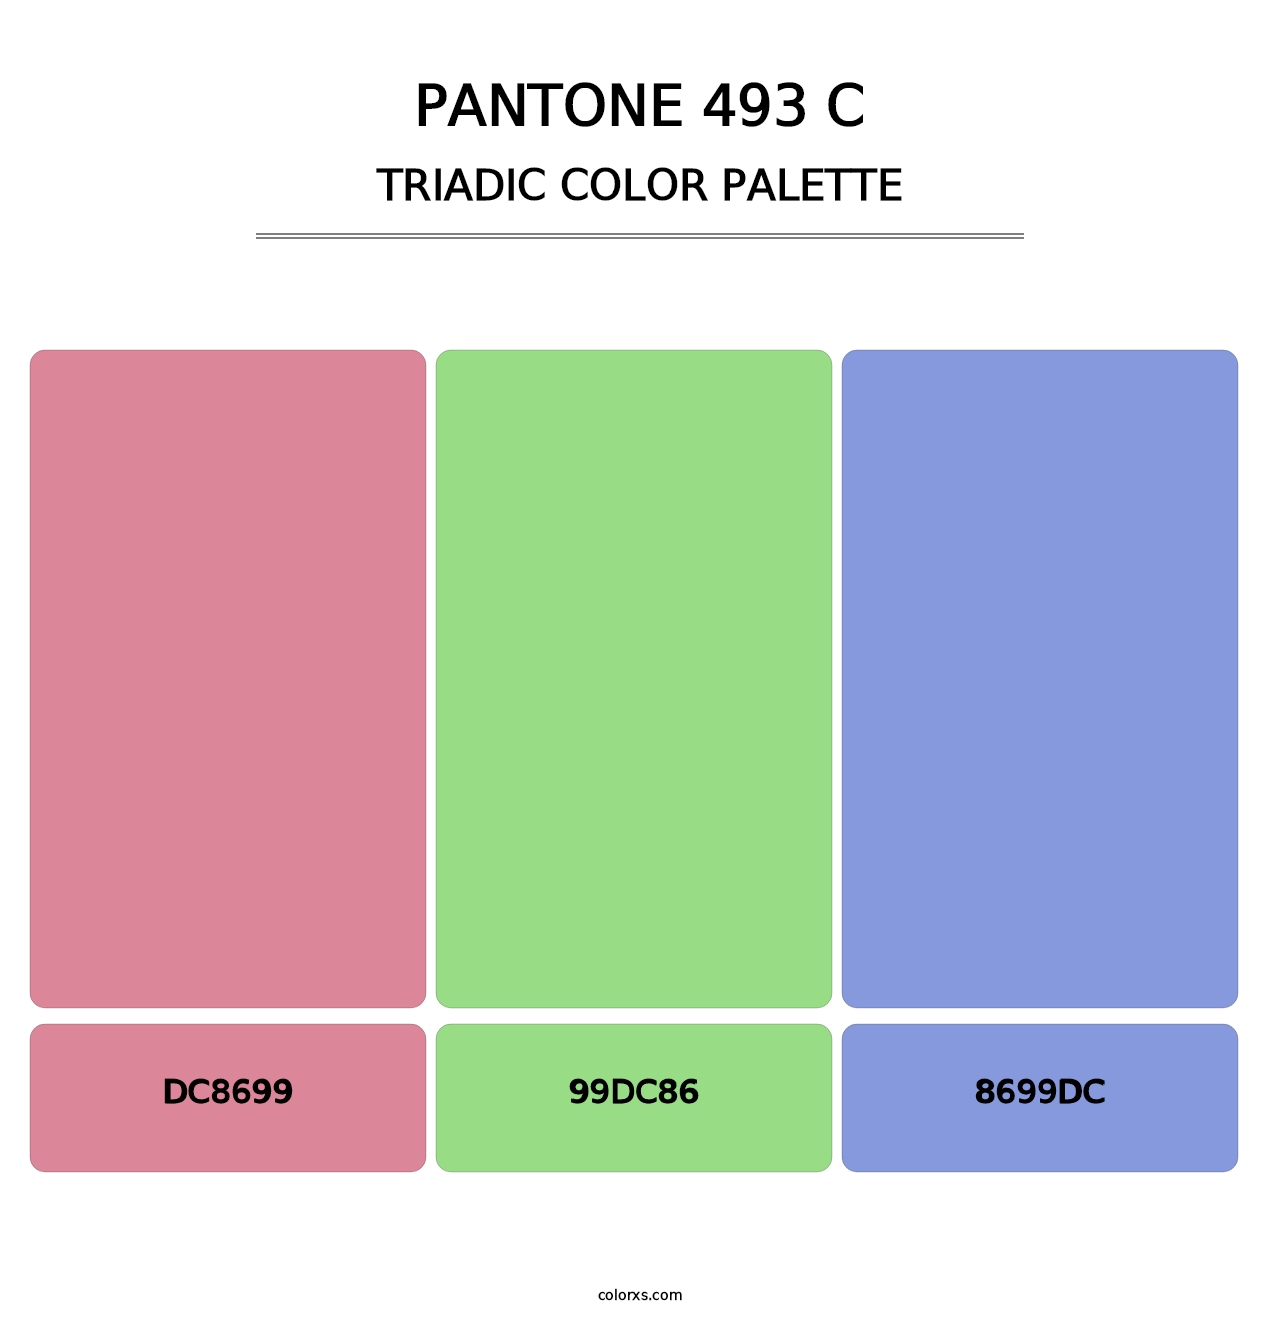 PANTONE 493 C - Triadic Color Palette